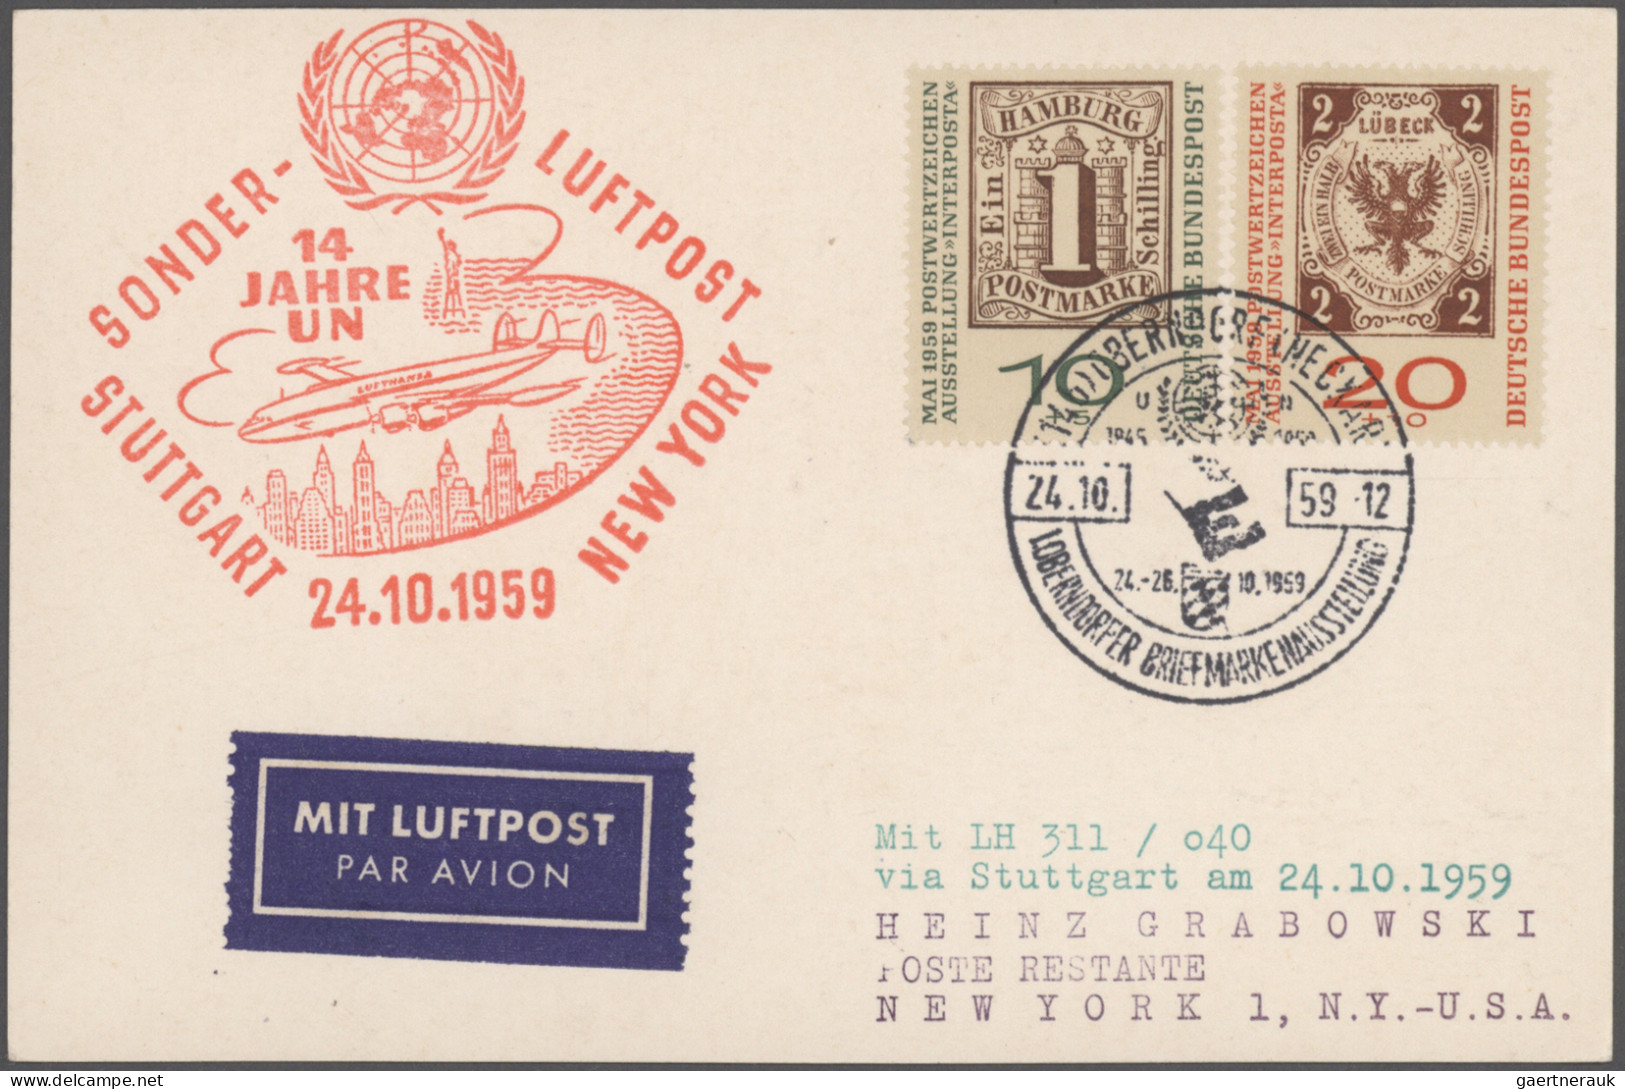 Französische Zone: 1945/1964, Partie von über 300 Briefen und Karten, dabei AM-P